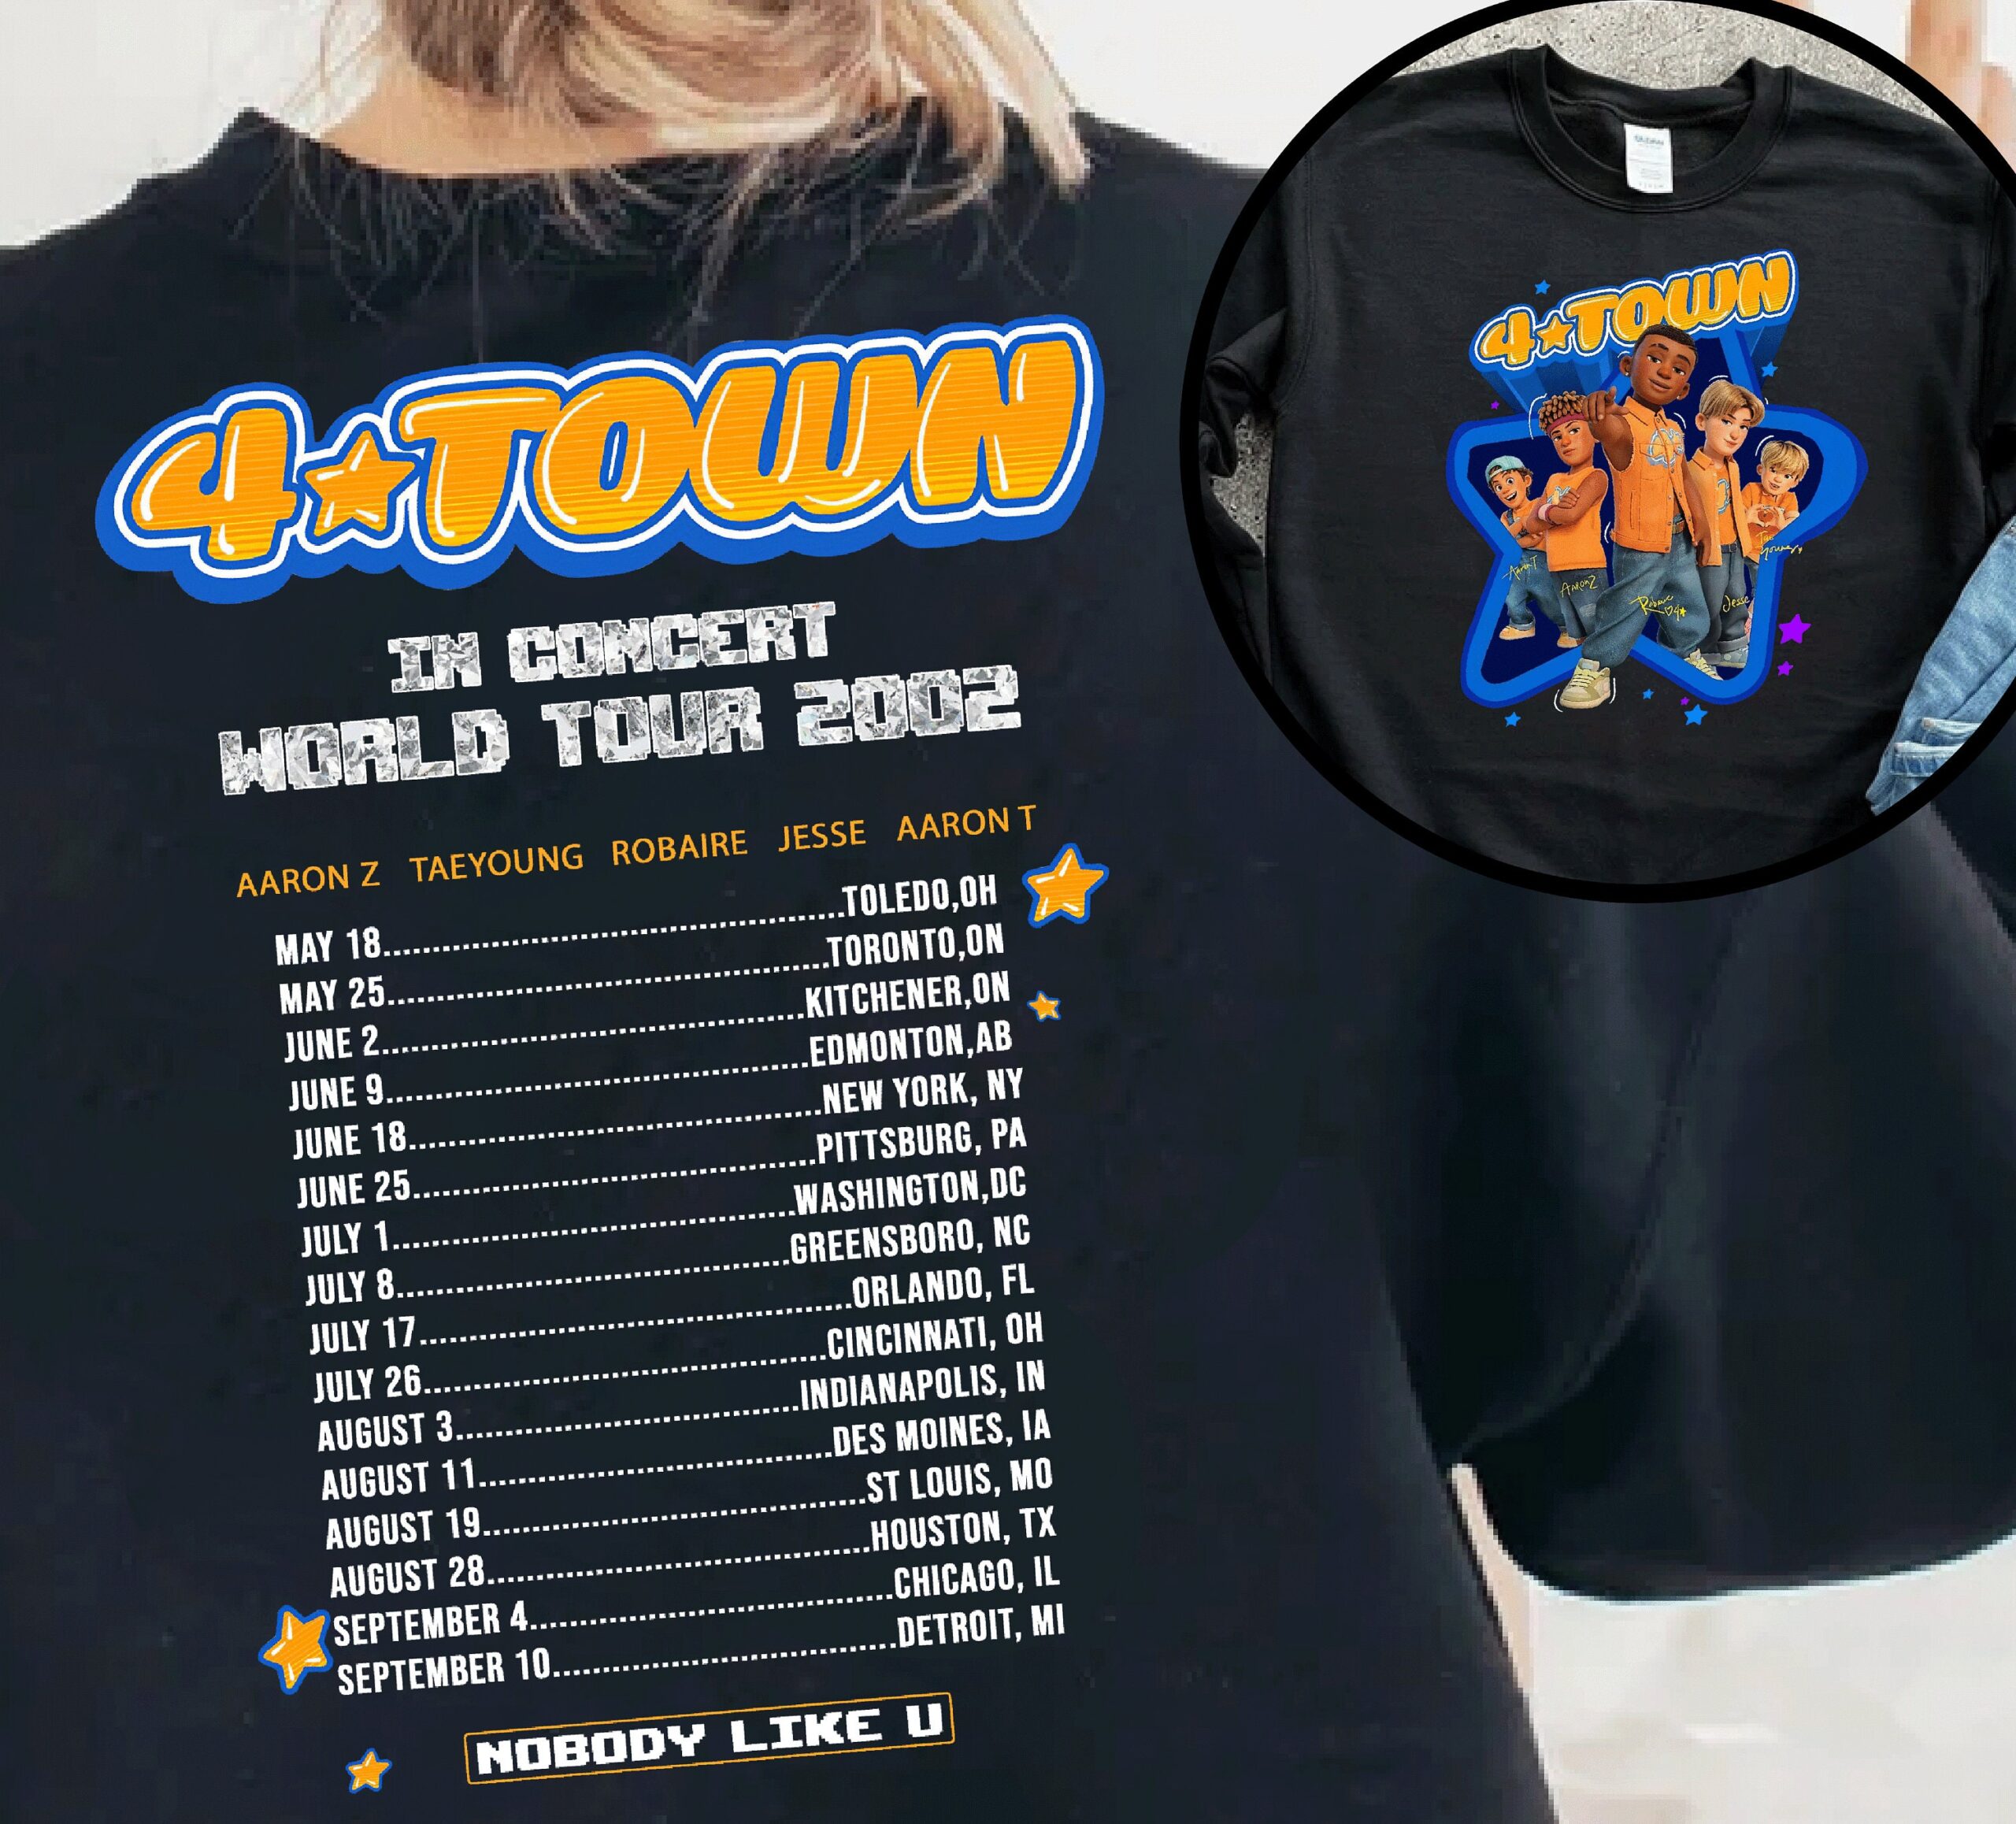 4 town world tour shirt